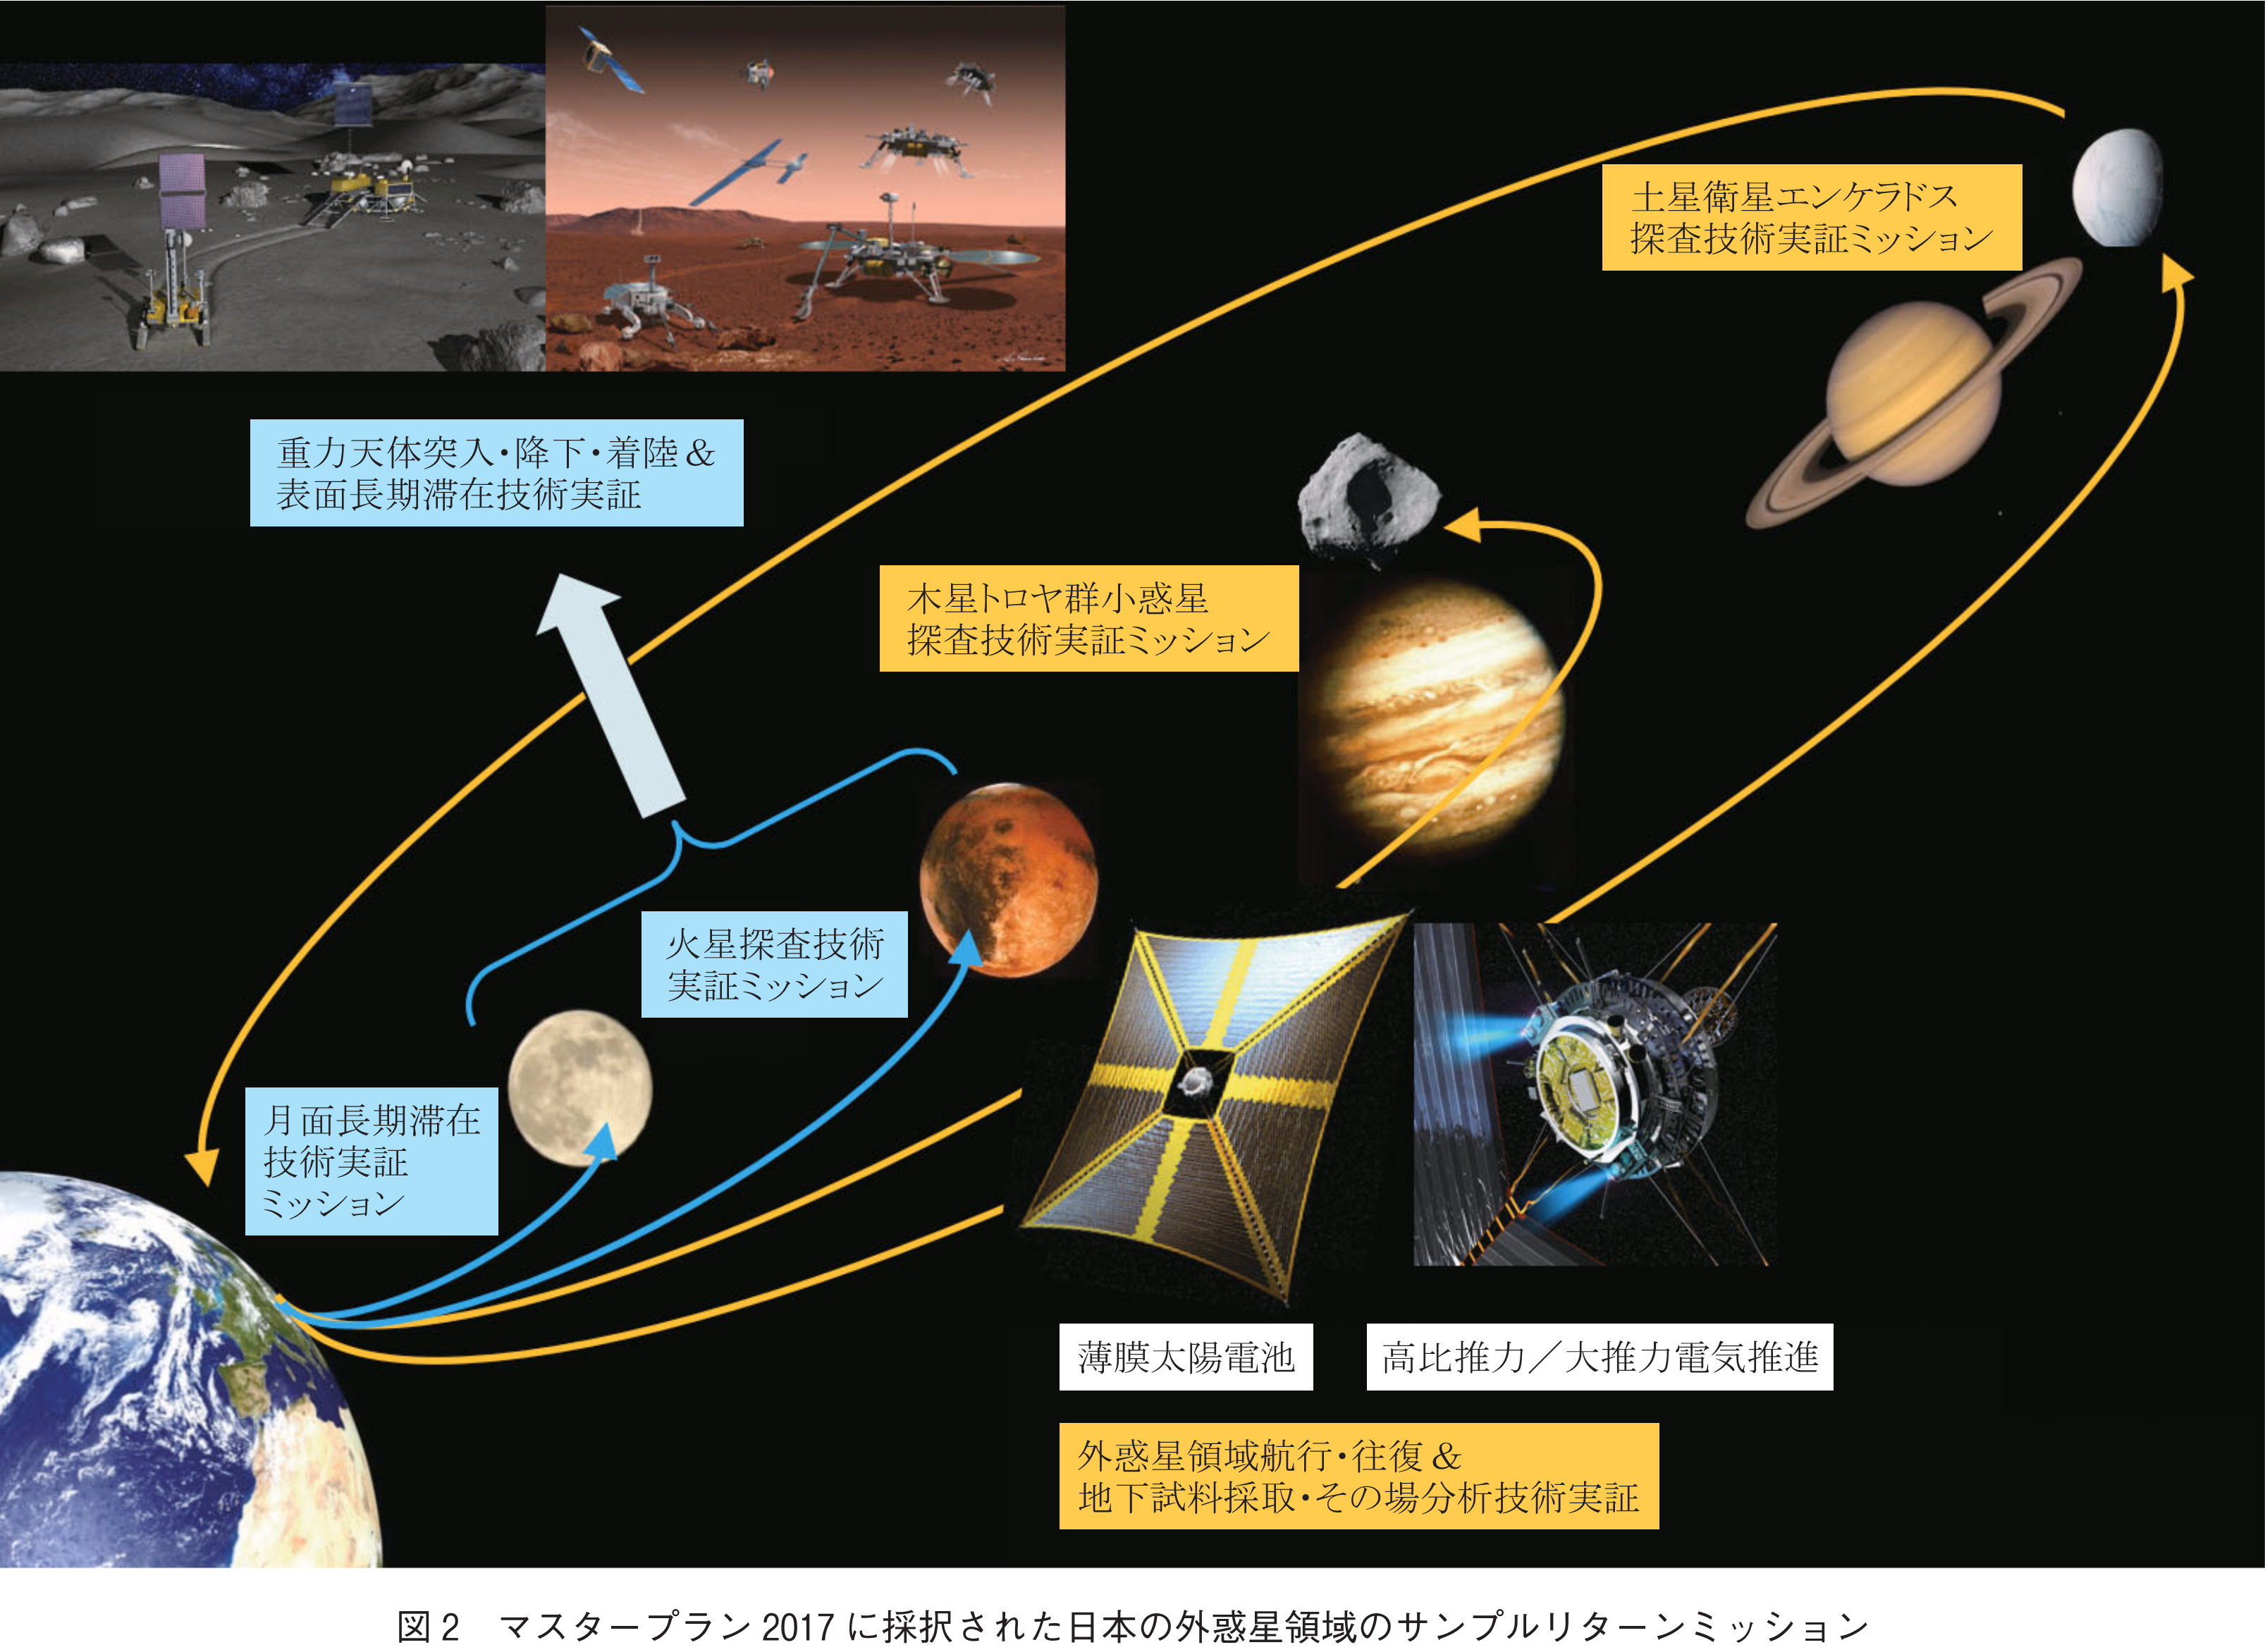 図2　マスタープラン2017に採択された日本の外惑星領域のサンプルリターンミッション